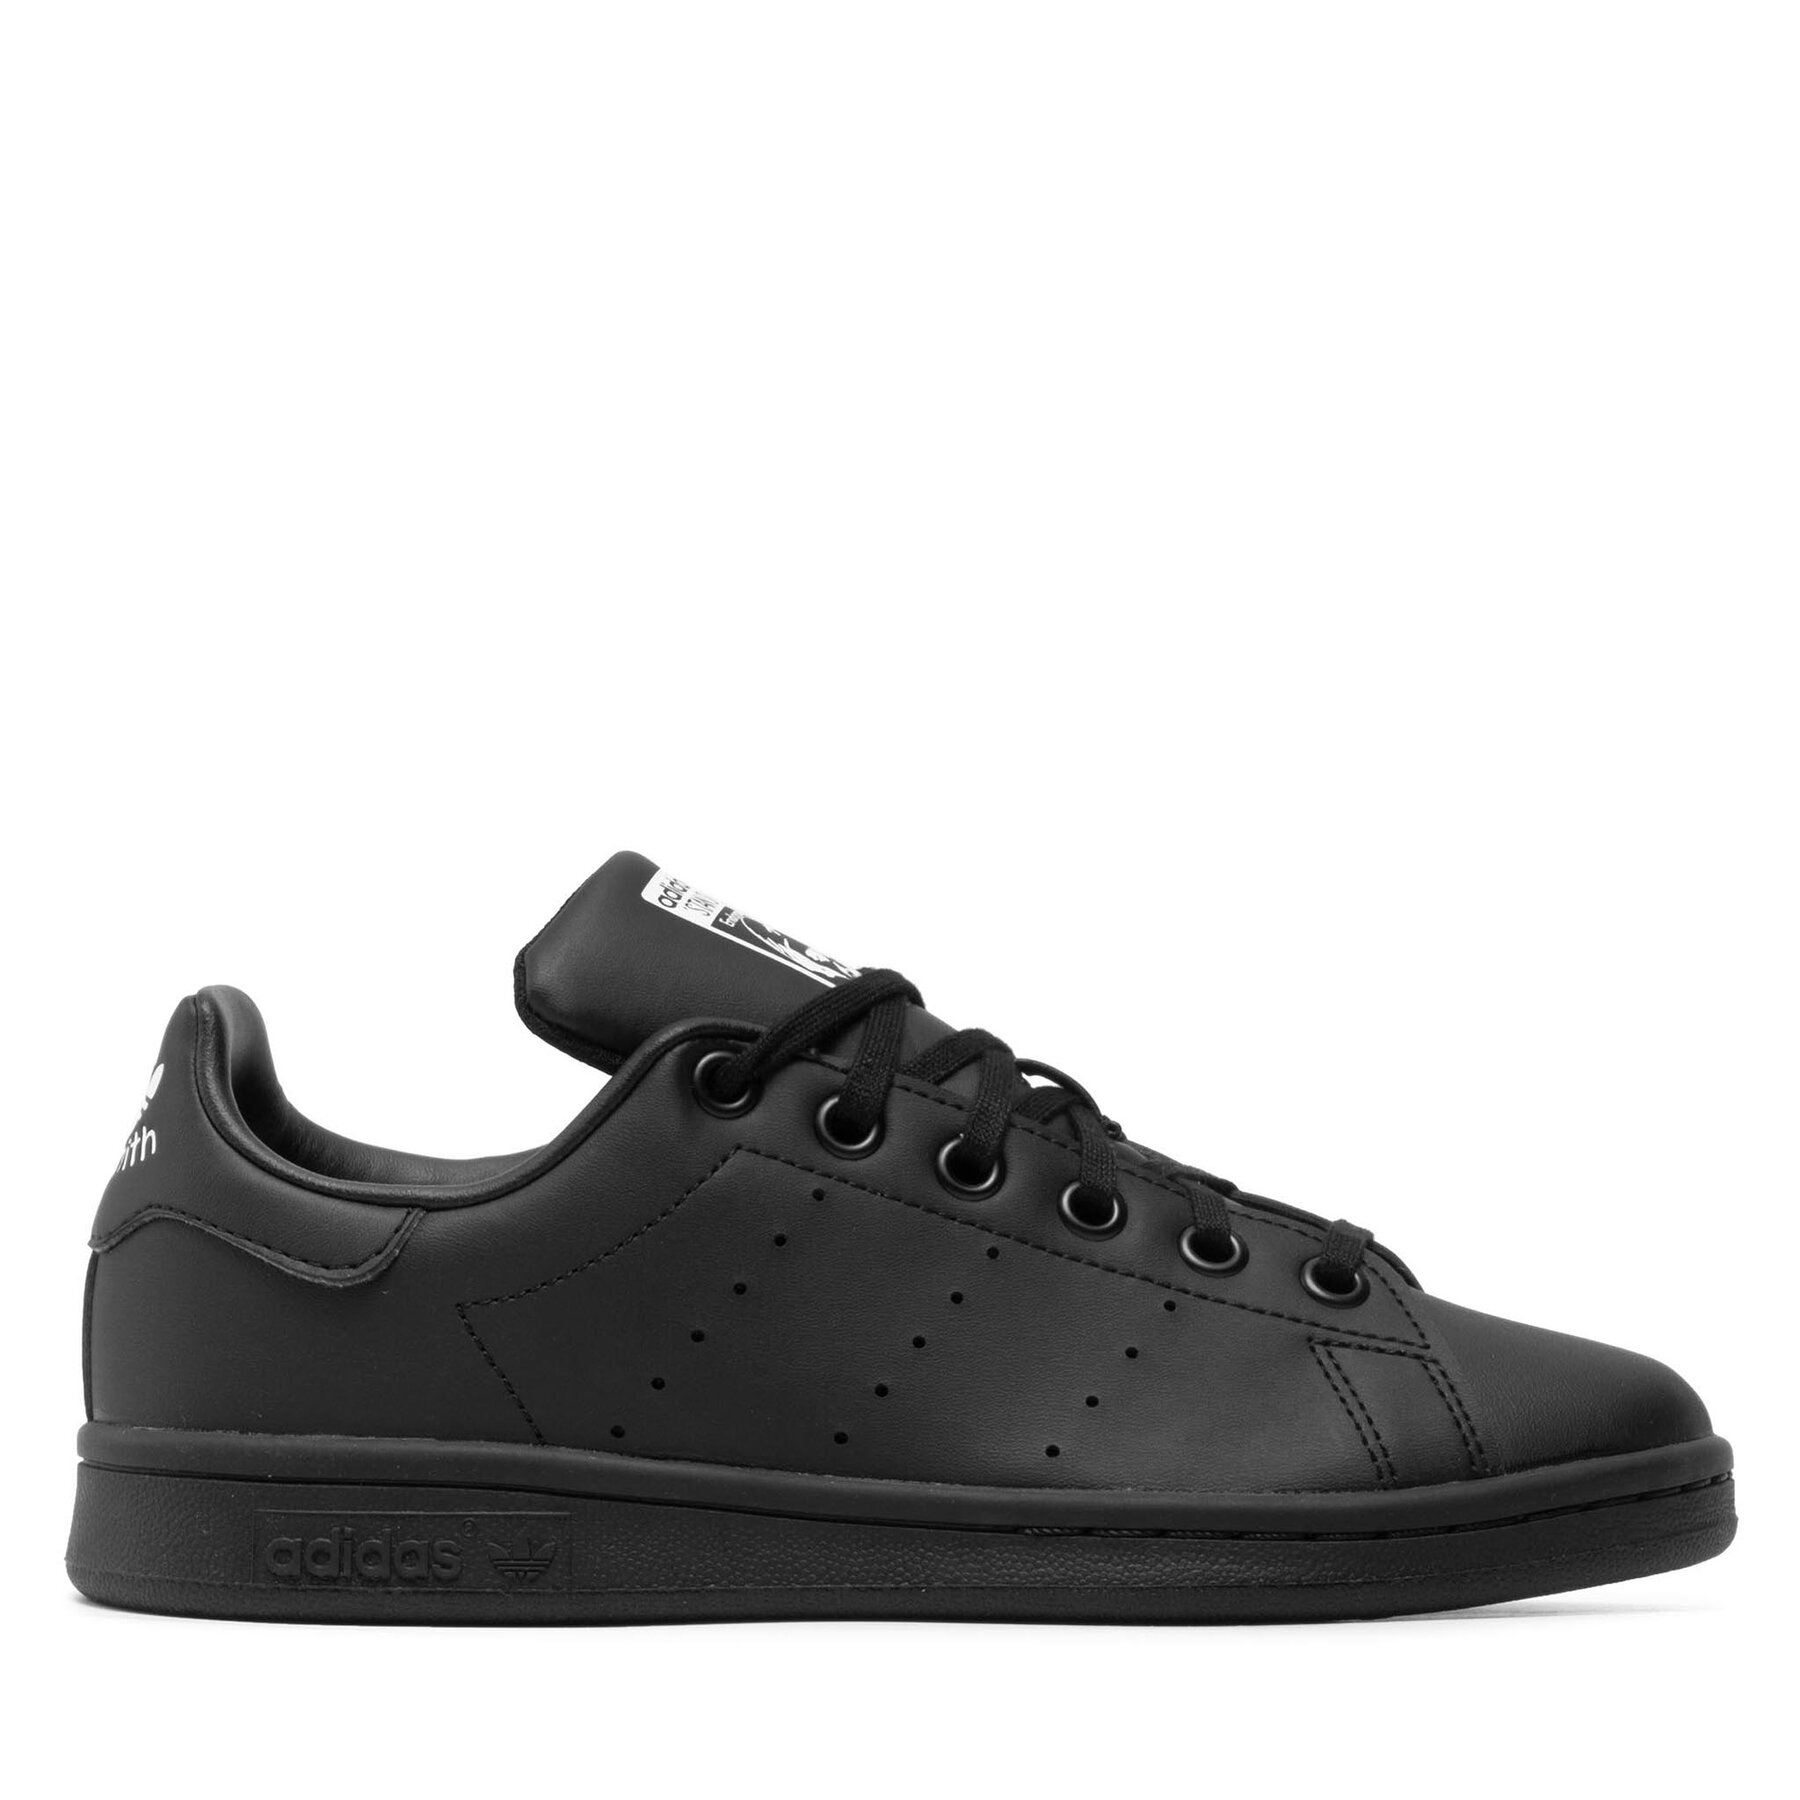 Comprar en oferta Adidas Stan Smith Kids (Primegreen) core black/core black/cloud white